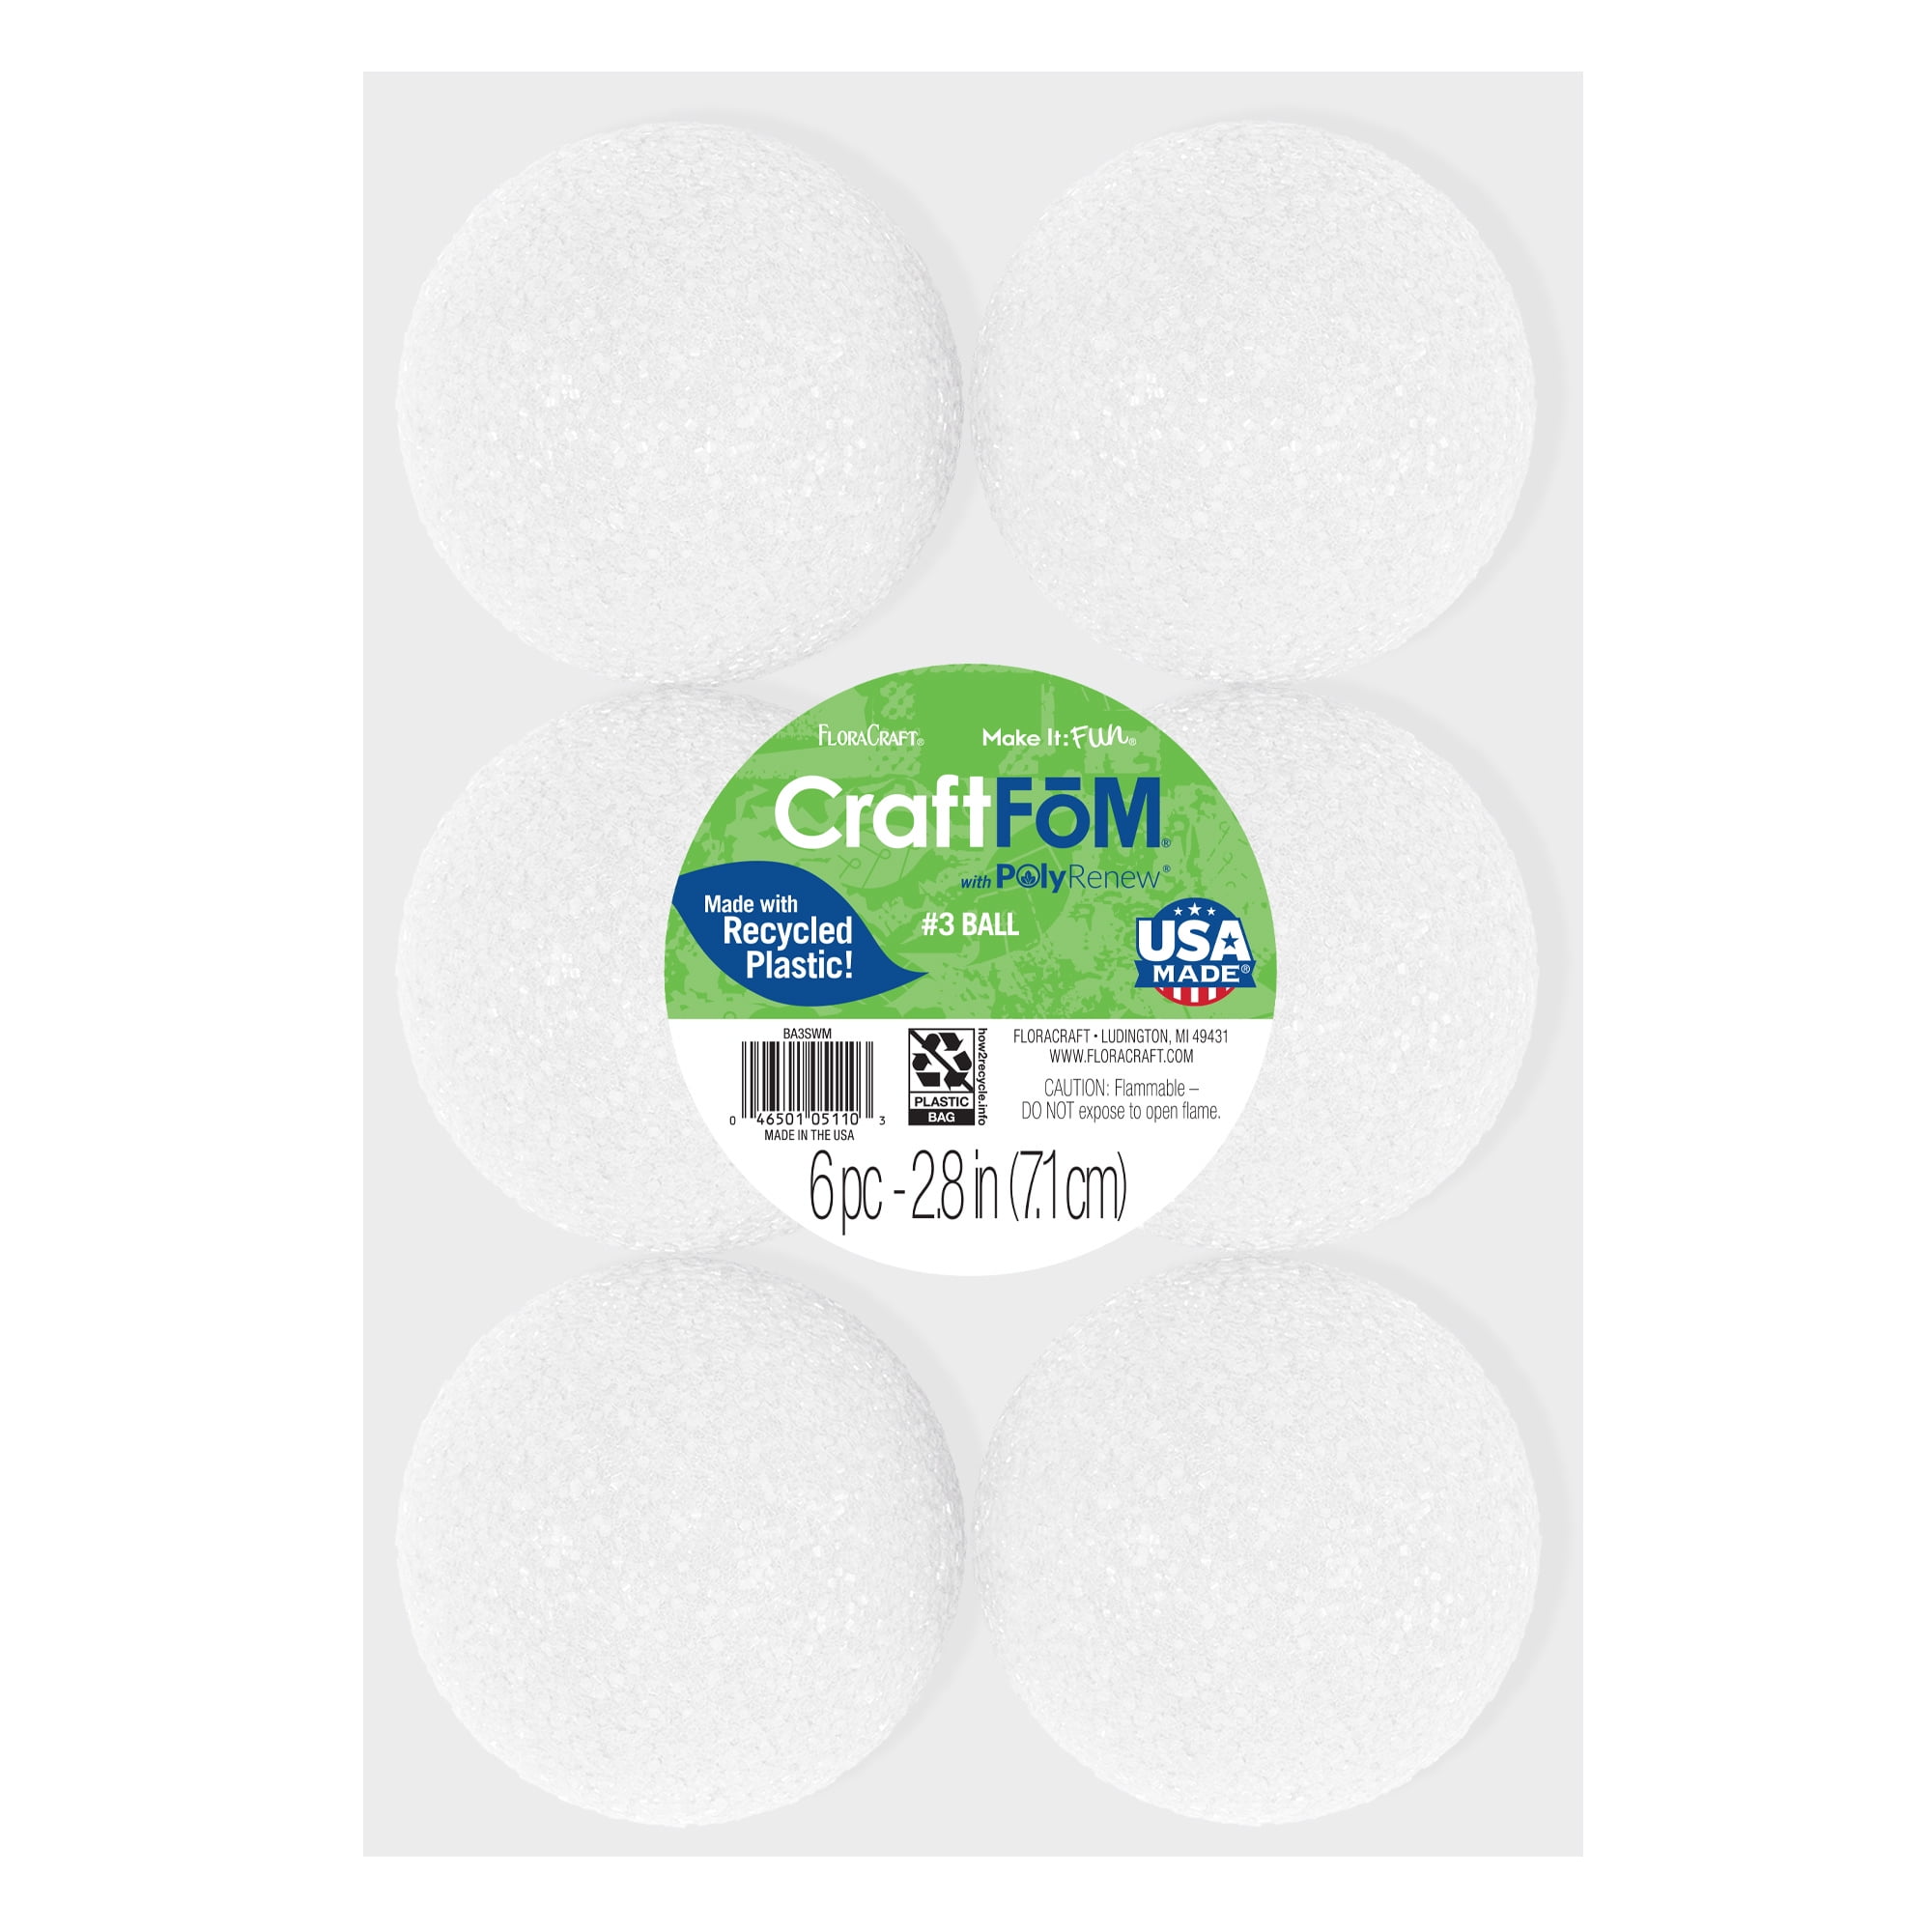 Zealor White Styrofoam Foam Balls 0.1-0.18 Inch for Slime Crafts